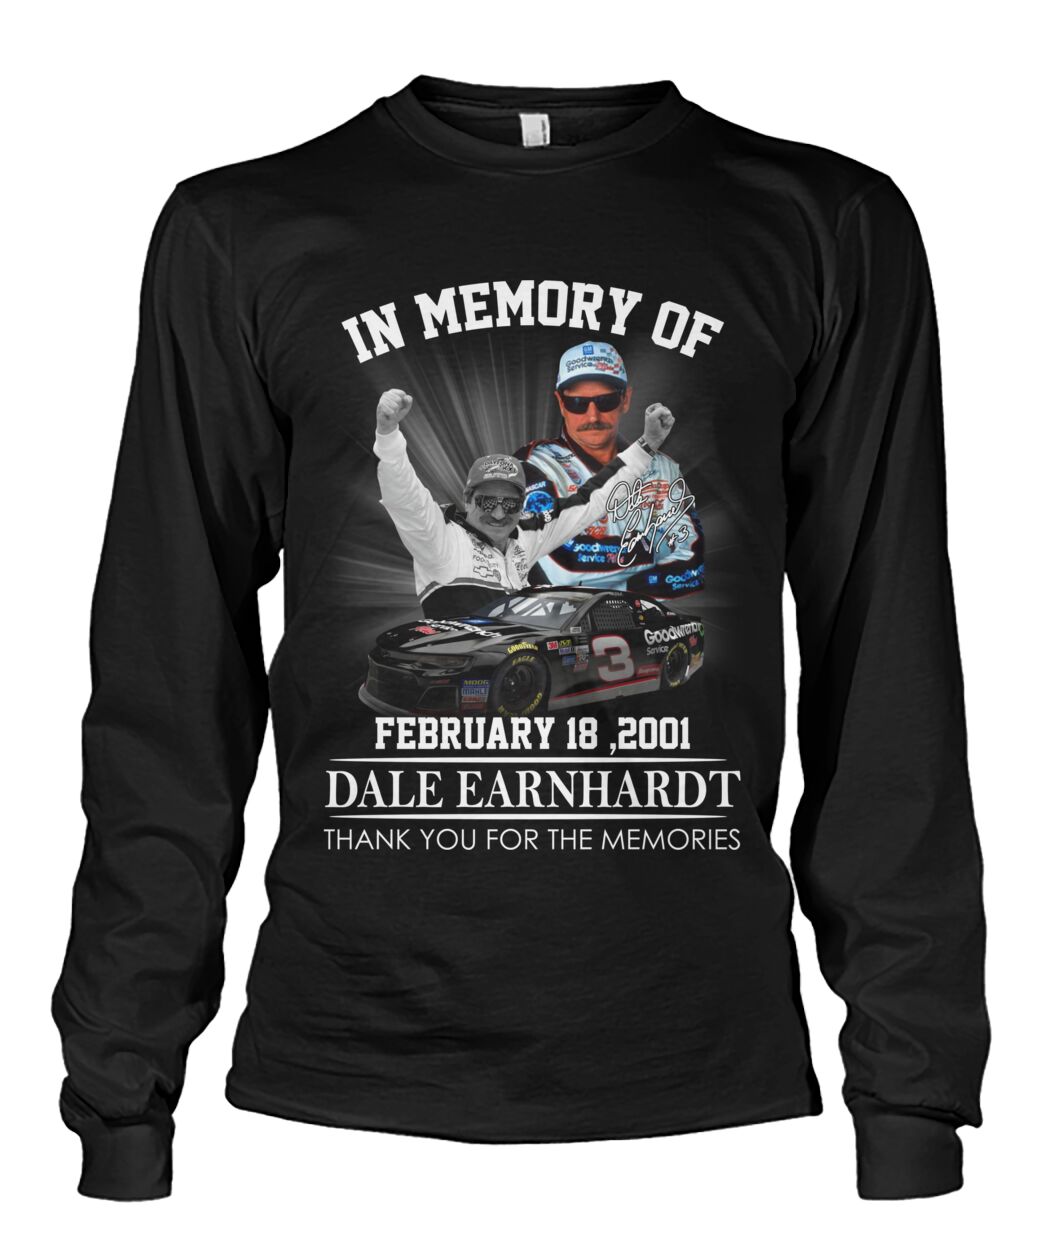 In memory of Dale Earnhardt February 18 2001 long sleeve